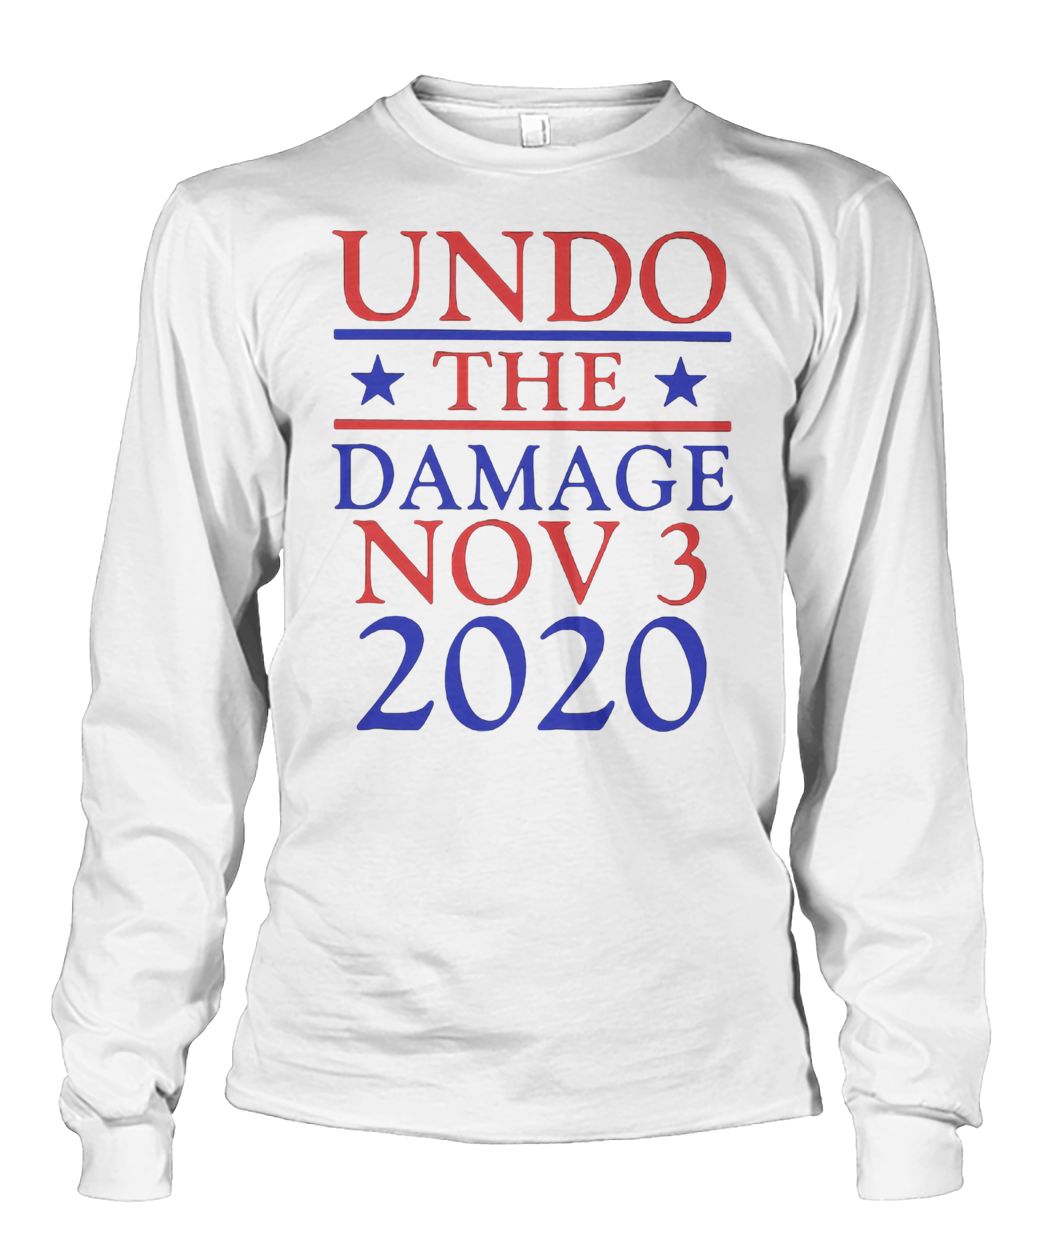 Undo the damage nov 3 2020 independent voters unisex long sleeve